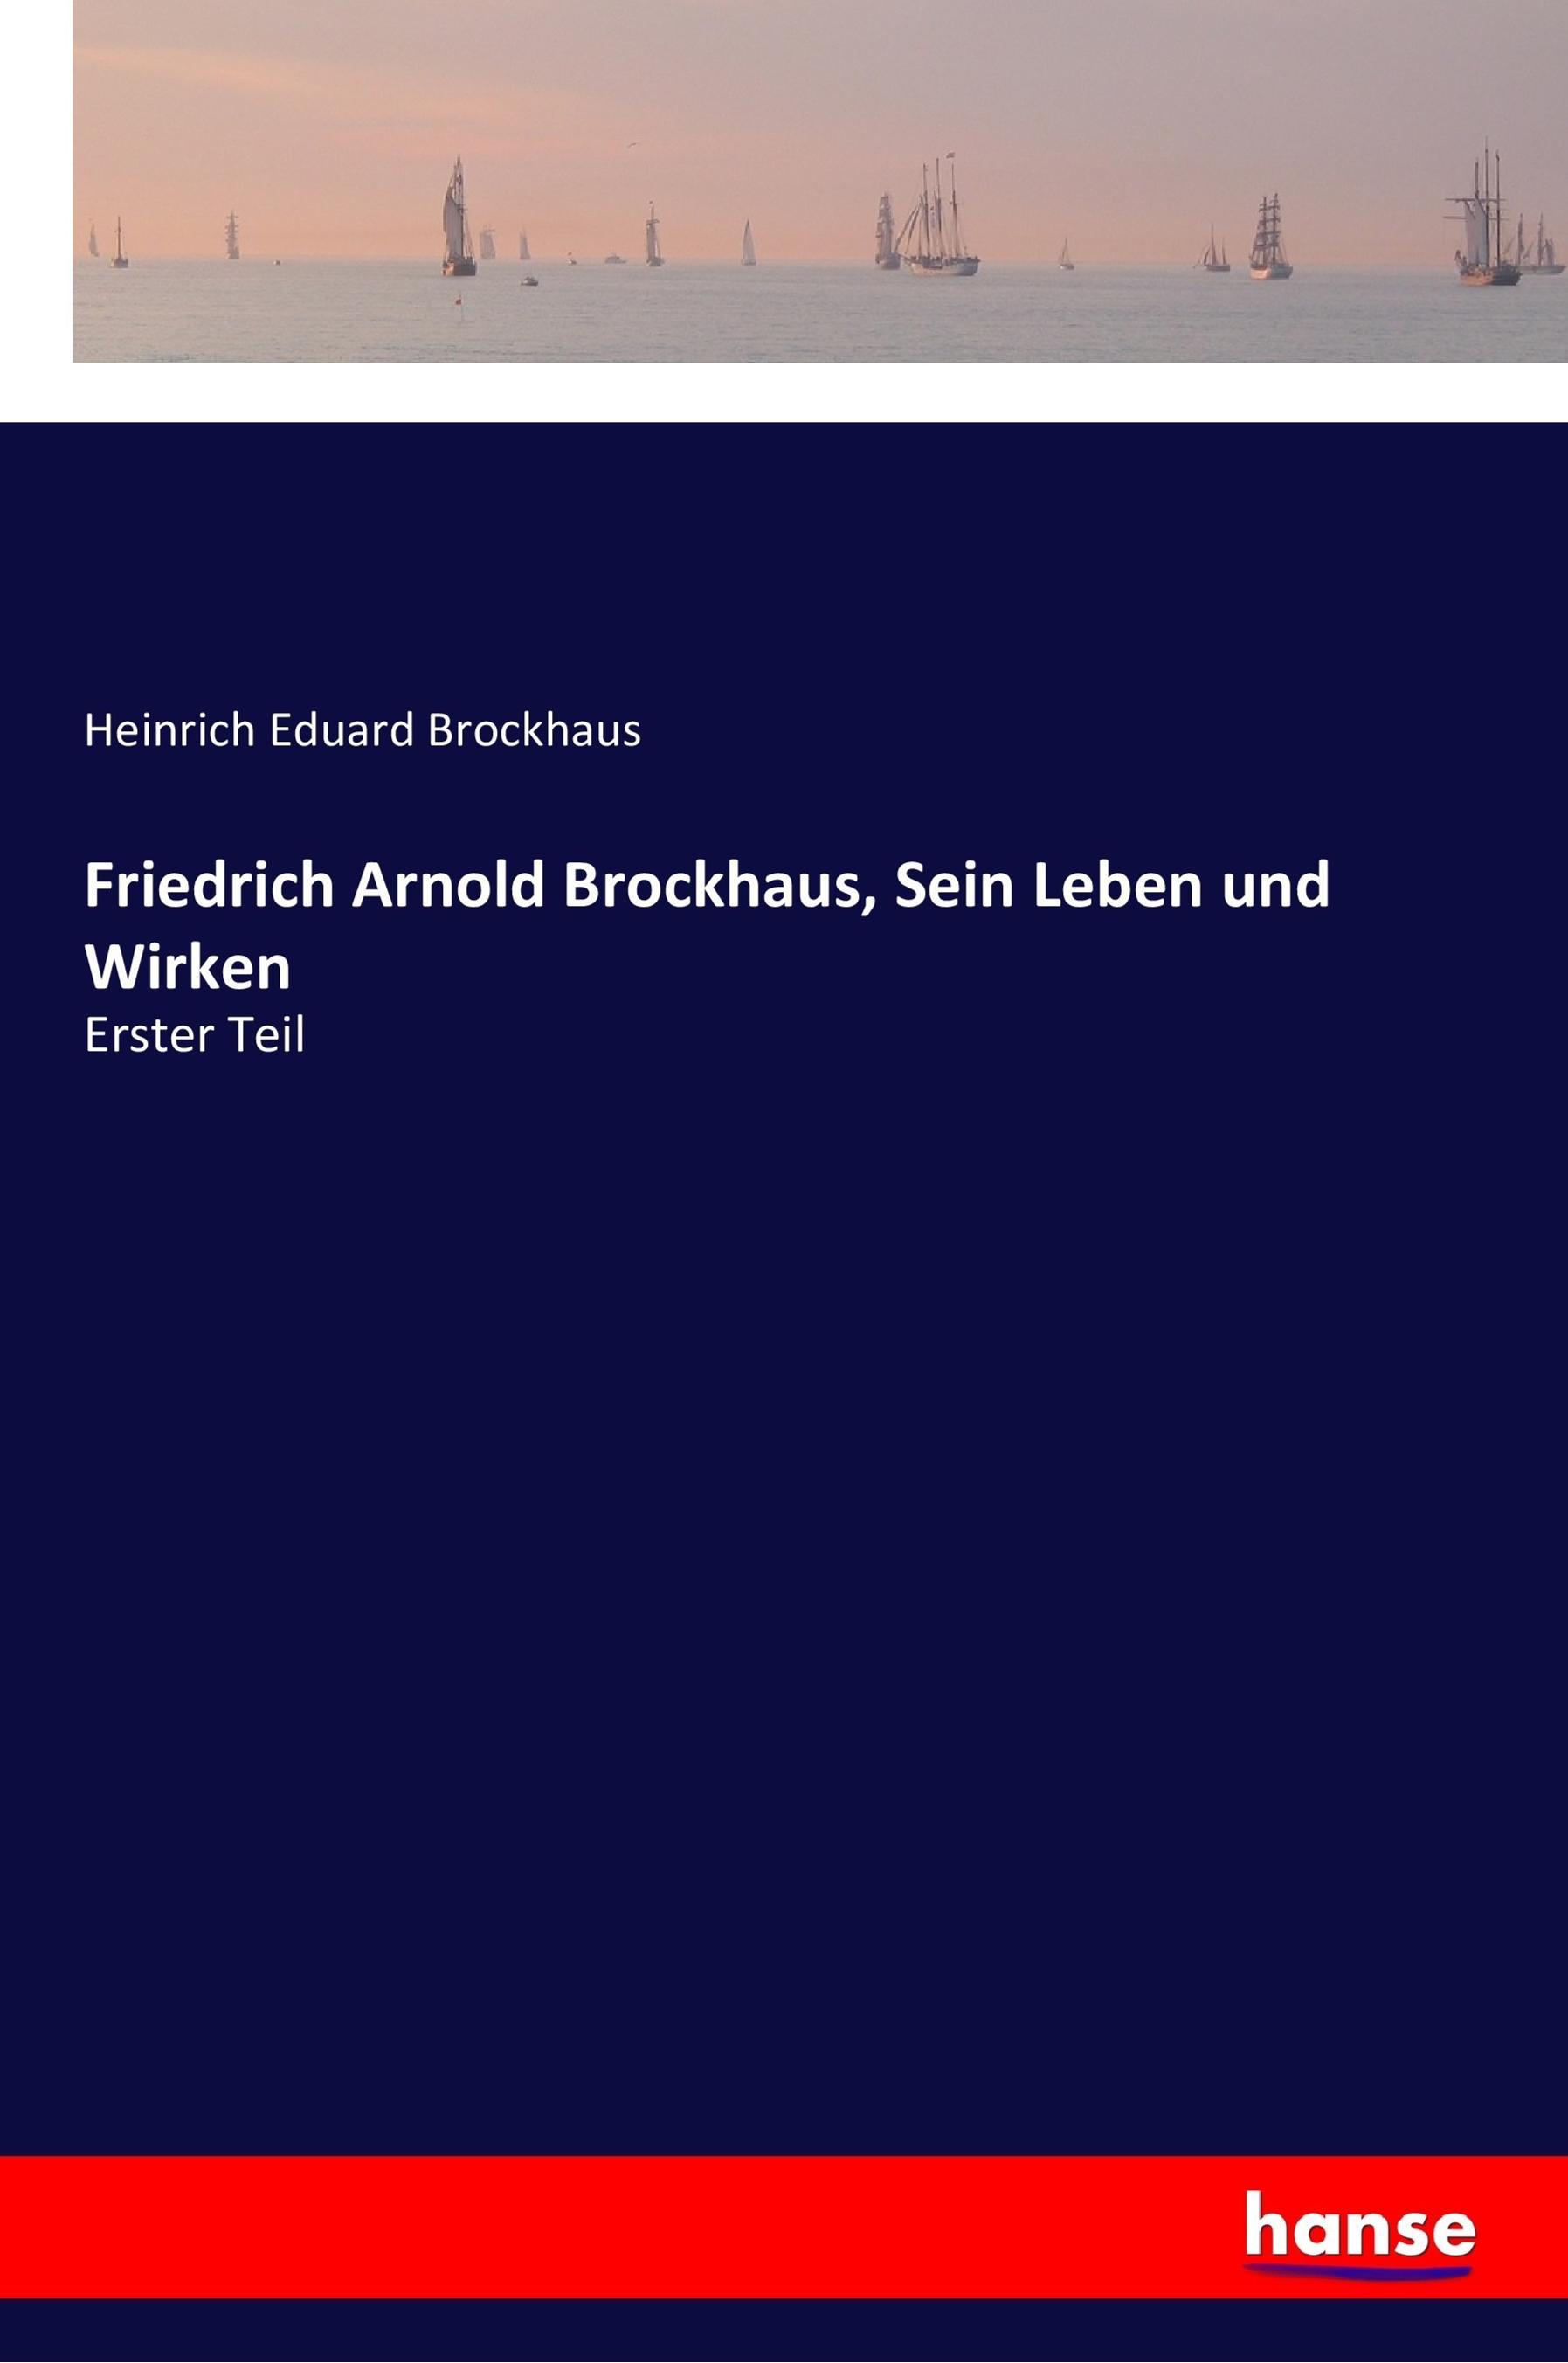 Friedrich Arnold Brockhaus, Sein Leben und Wirken / Erster Teil / Heinrich Eduard Brockhaus / Taschenbuch / Paperback / 536 S. / Deutsch / 2017 / hansebooks / EAN 9783337357092 - Brockhaus, Heinrich Eduard